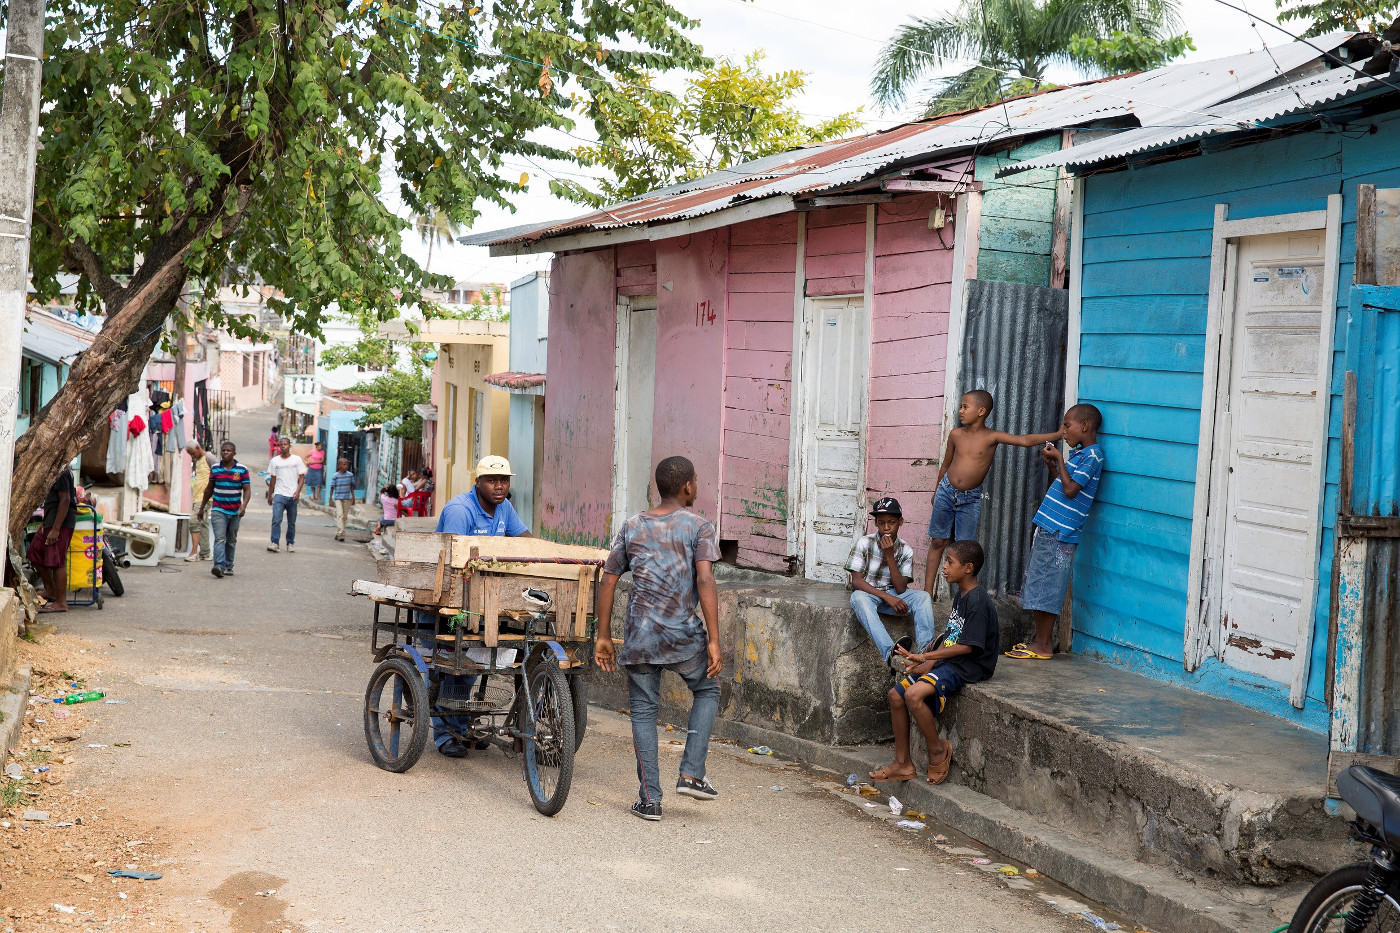 Straßenszene in Santo Domingo, der Hauptstadt der Dominikanischen Republik. Foto (Symbolbild): Adveniat/Achim Pohl